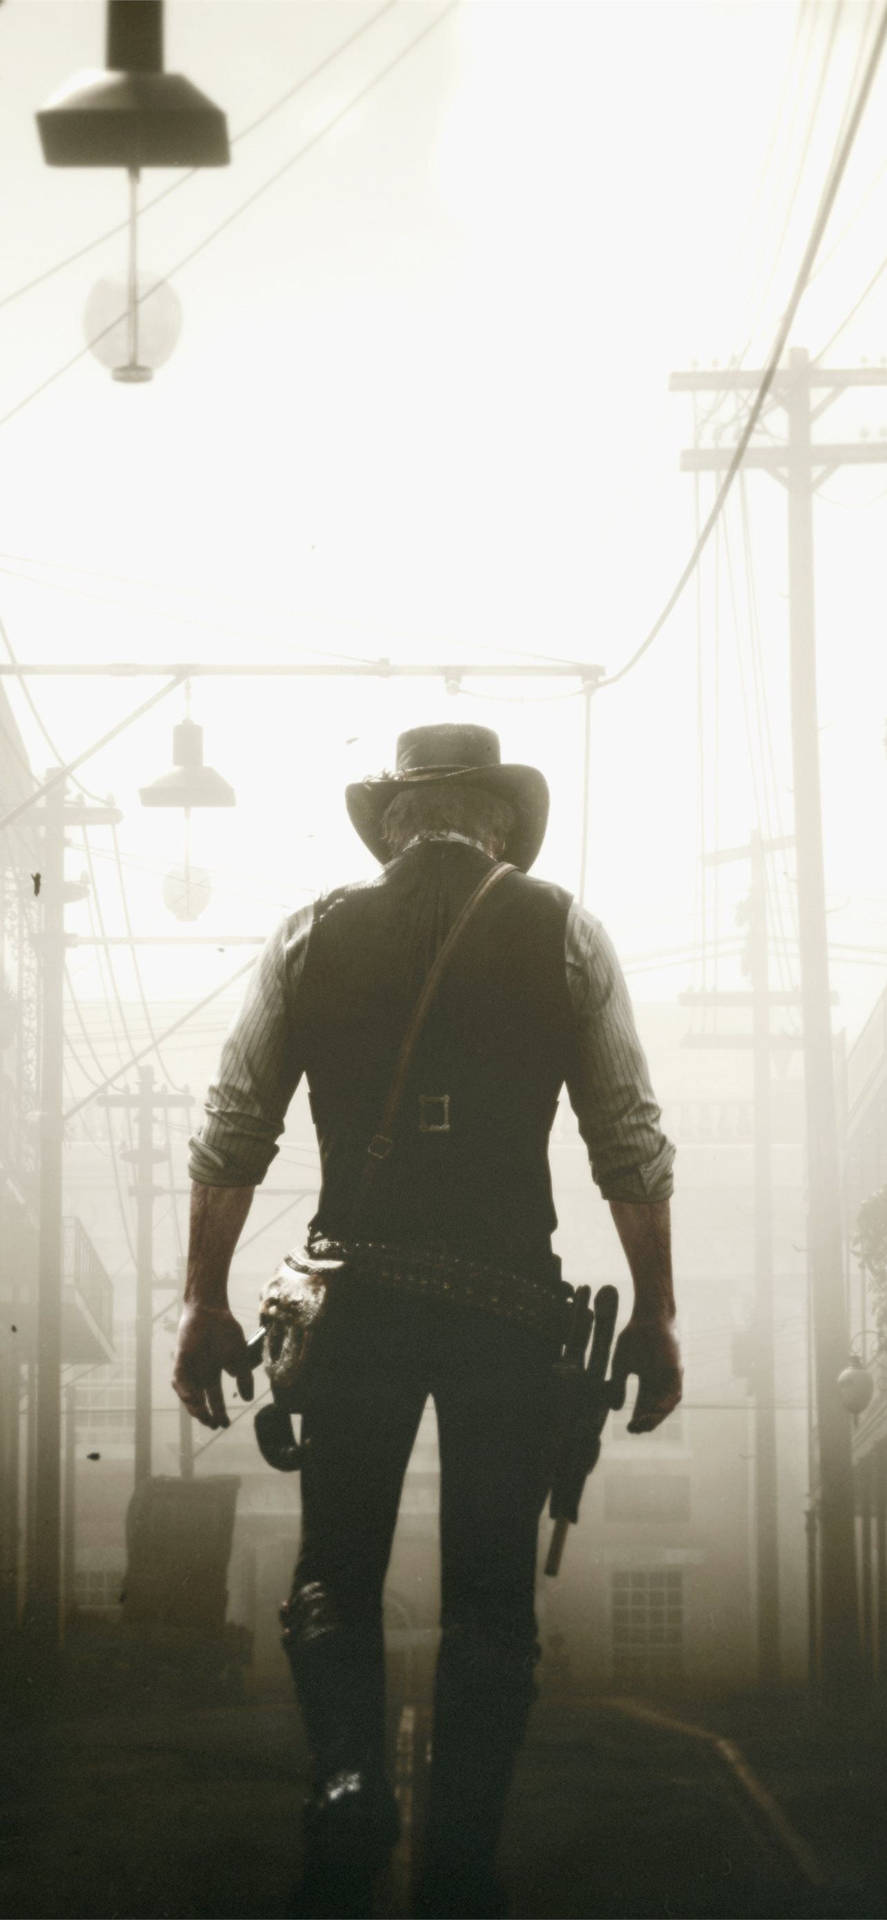 Dascowboy-bild Von Red Dead Redemption 2. Wallpaper